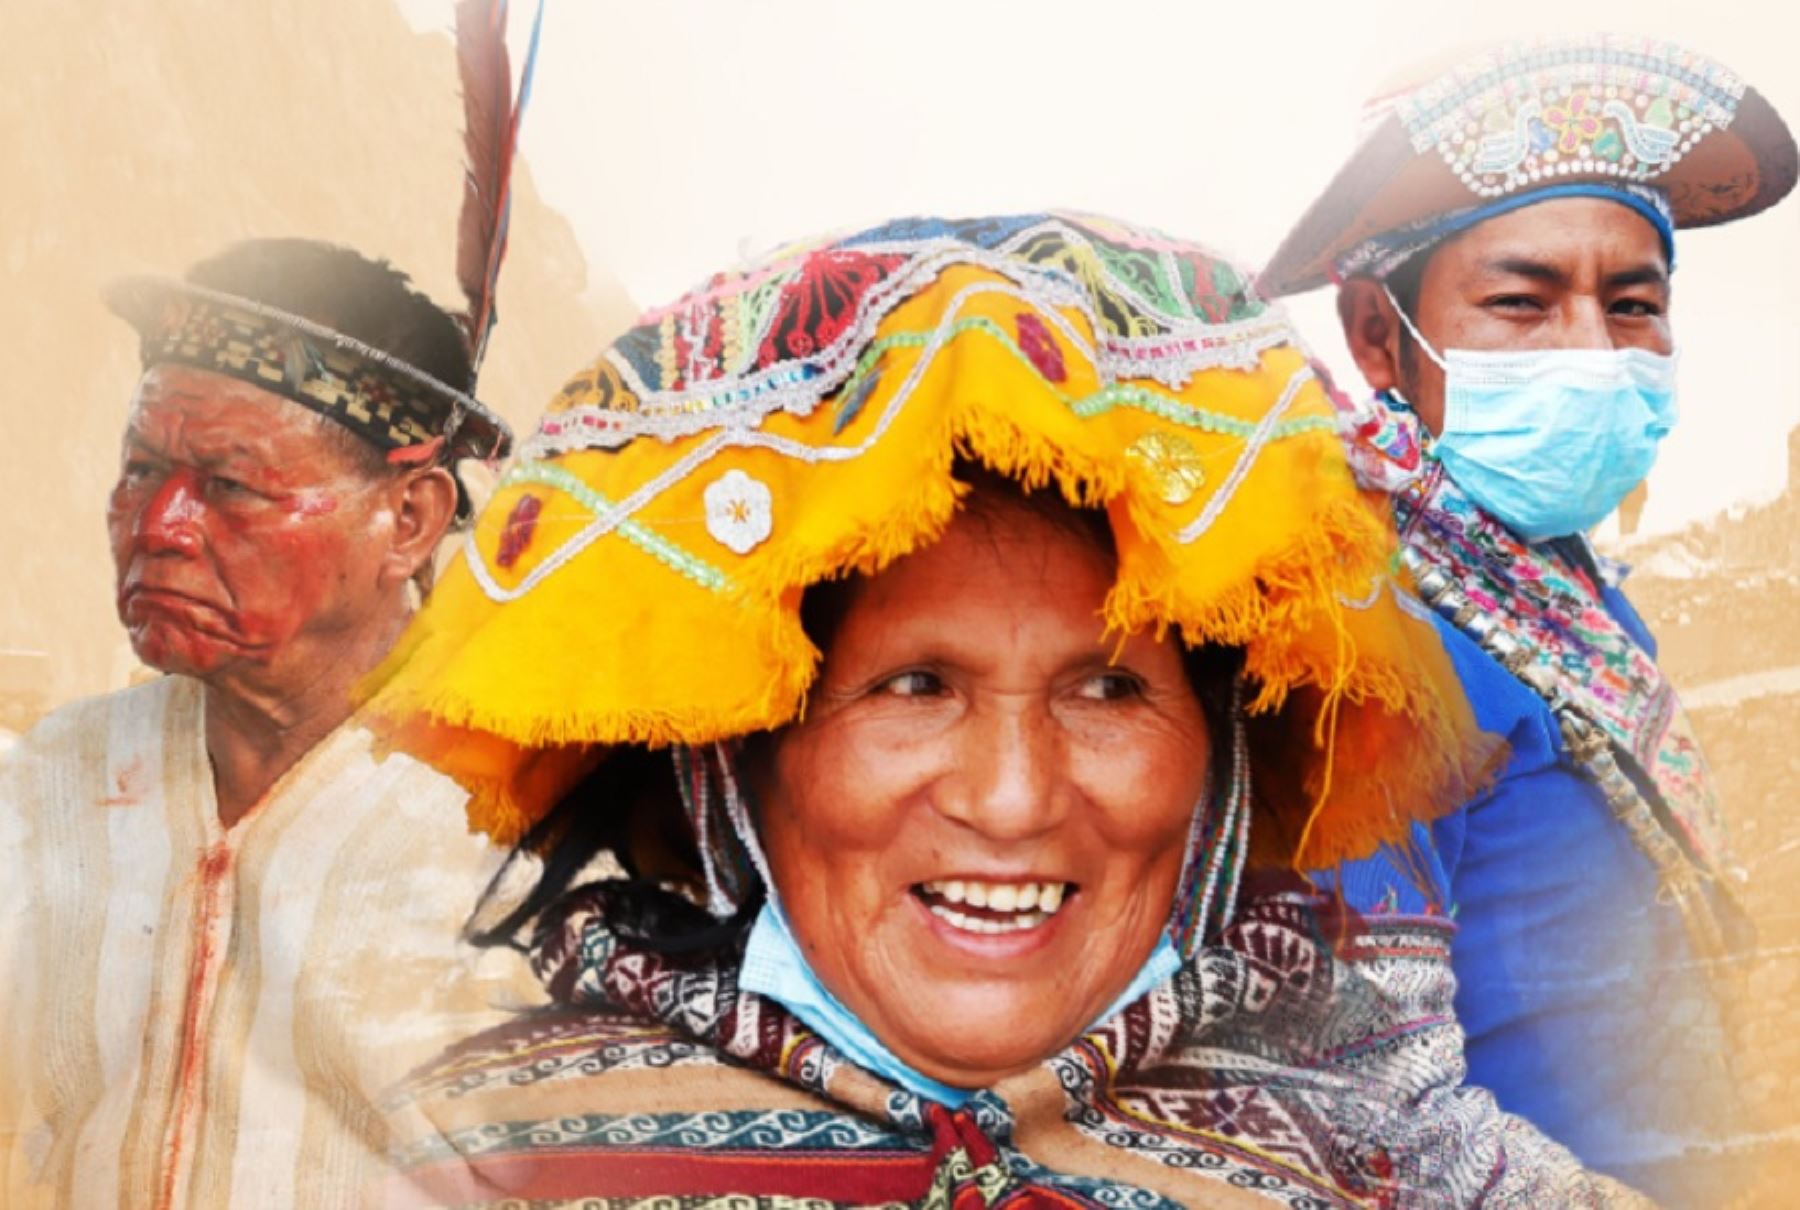 Hoy se celebra el Día de las Lenguas Originarias, y si bien el castellano es la lengua oficial, hay que recordar que en Perú hay más de 4.4 millones de habitantes pertenecientes a alguno de los 55 pueblos indígenas que se comunican a través de una de las 48 lenguas originarias existentes.